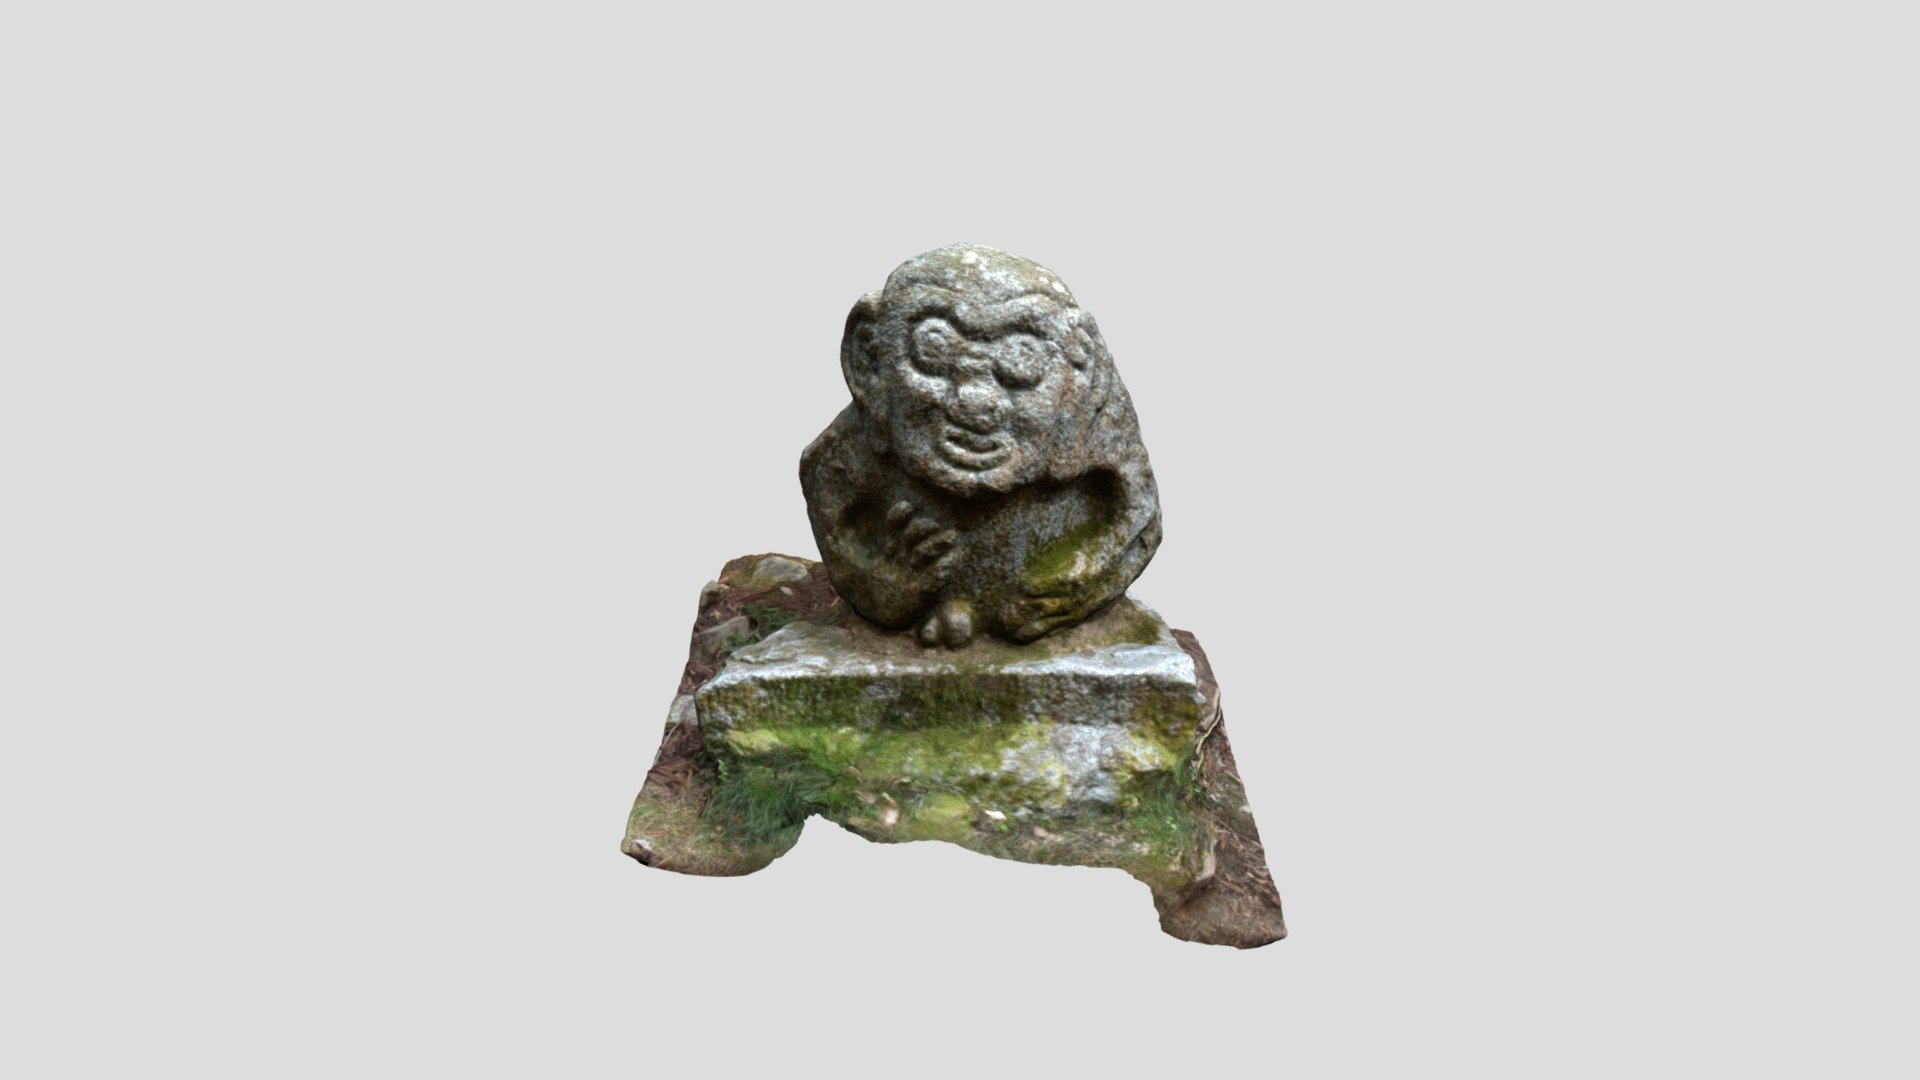 高取城（奈良県高取町）の猿石。 飛鳥の吉備姫王墓に残る4体の猿石と同類の石造物である。7世紀頃に制作されたと推定され、のちに高取城に移されたと伝わる。
Nikon D5500（AF-P DX NIKKOR 10-20mm f/4.5-5.6G VR）で撮影し、Metashapeで処理した。

Saruishi at Takatori castle (Takatori town, Nara prefecture, Japan). It is a stonework of the same type as four Saruishi that remain in the tomb of Kibihime in Asuka. It is estimated to have been created around the 7th century, and was later moved to Takatori Castle.
Taken with Nikon D5500 (AF-P DX NIKKOR 10-20mm f/4.5-5.6G VR) and processed with Metashape 3d model